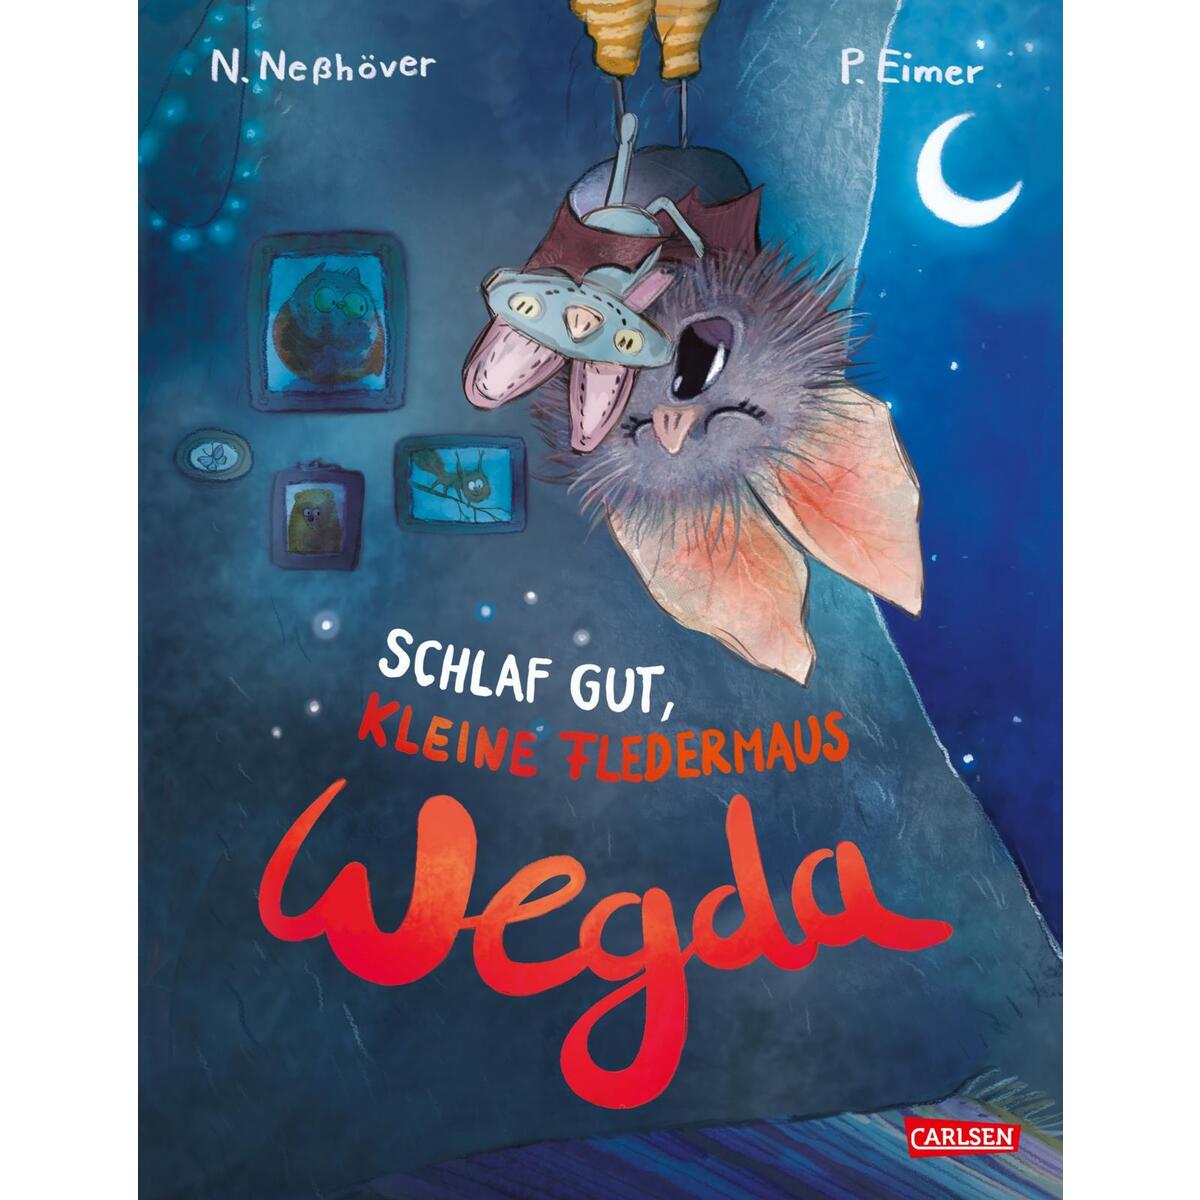 Die kleine Fledermaus Wegda: Schlaf gut, kleine Fledermaus Wegda! von Carlsen Verlag GmbH